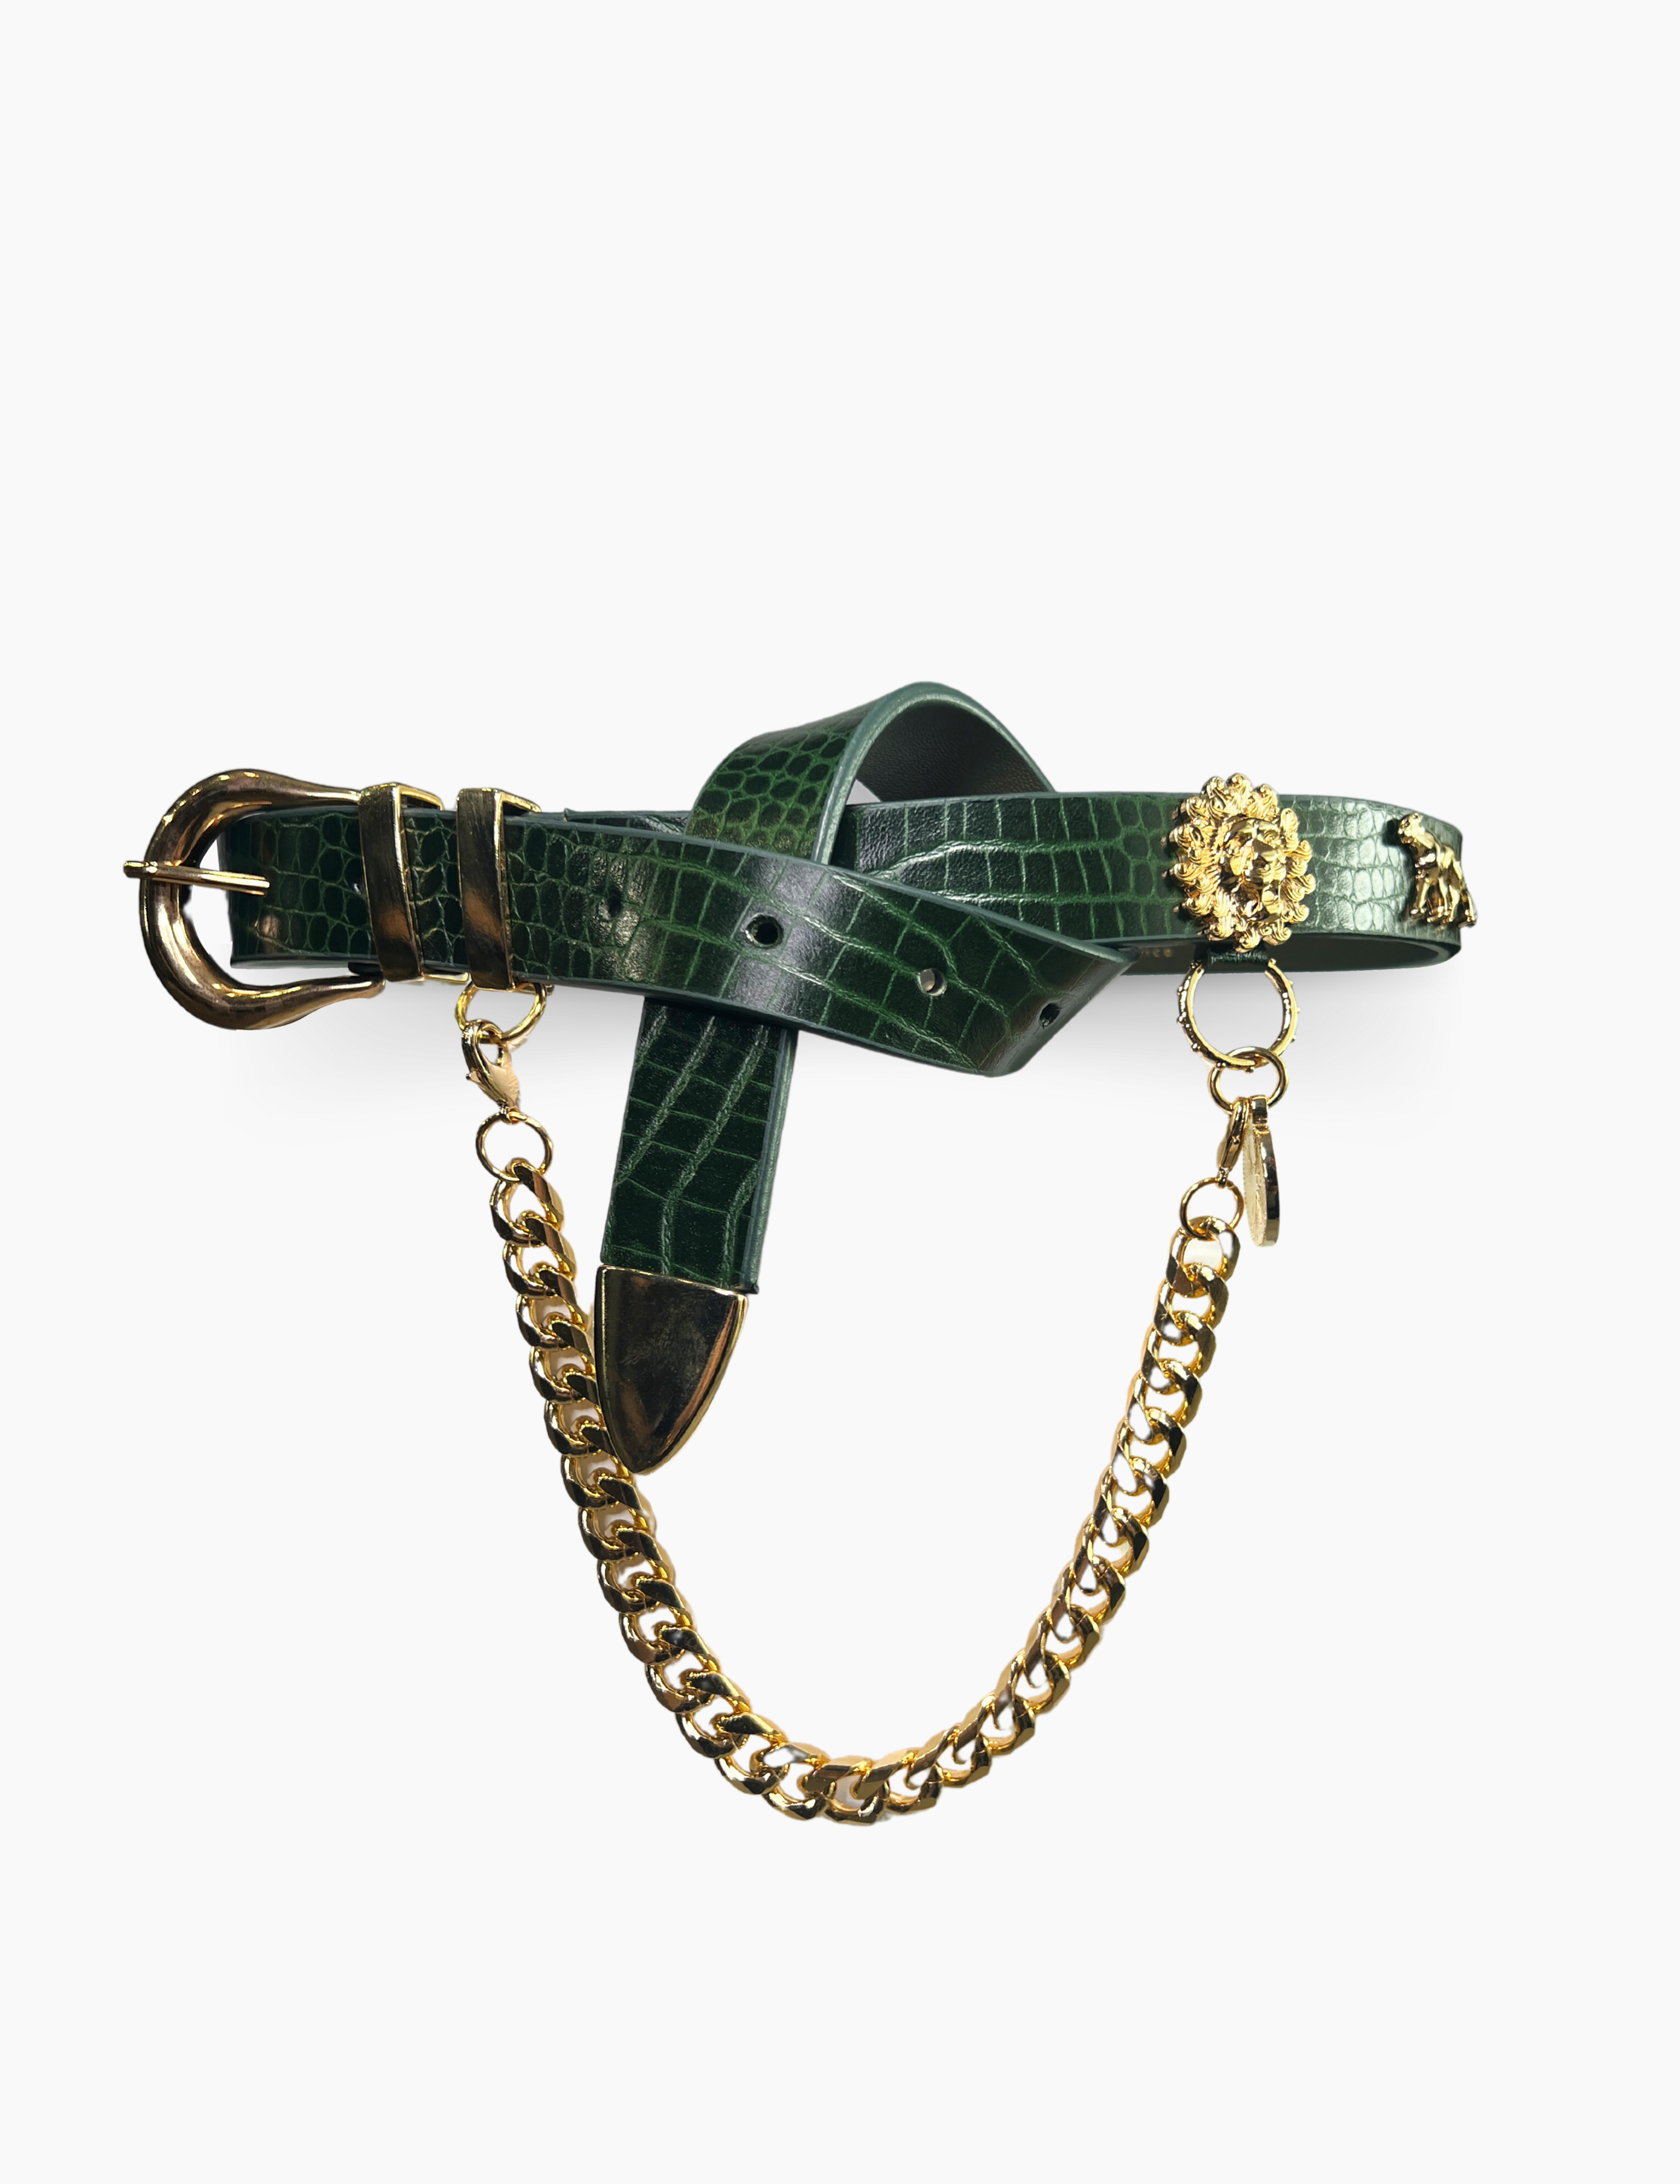 Cinturón de cadena Panthera esmeralda